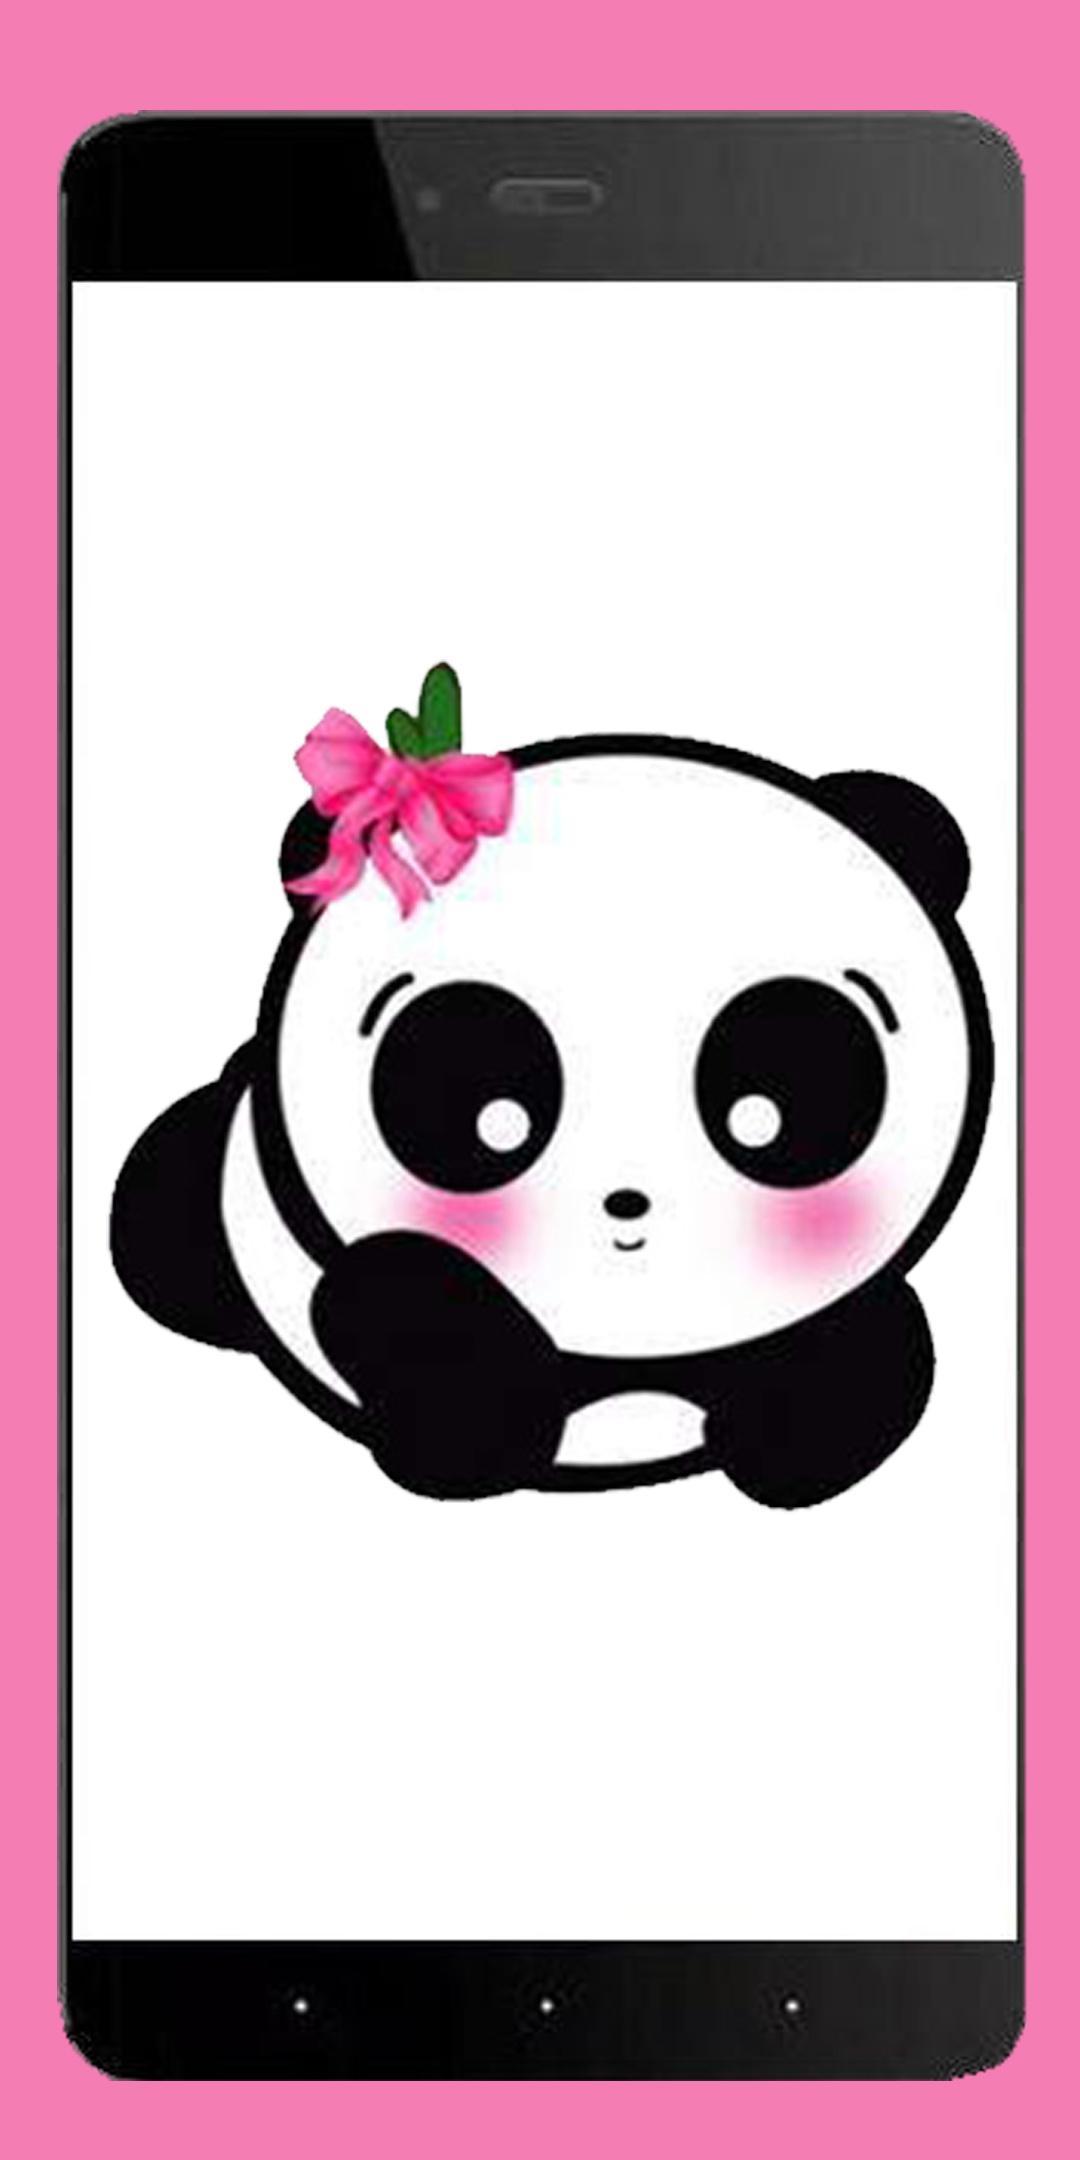 Cute Panda Wallpaper Hd For Android Apk Download - Cute Panda , HD Wallpaper & Backgrounds